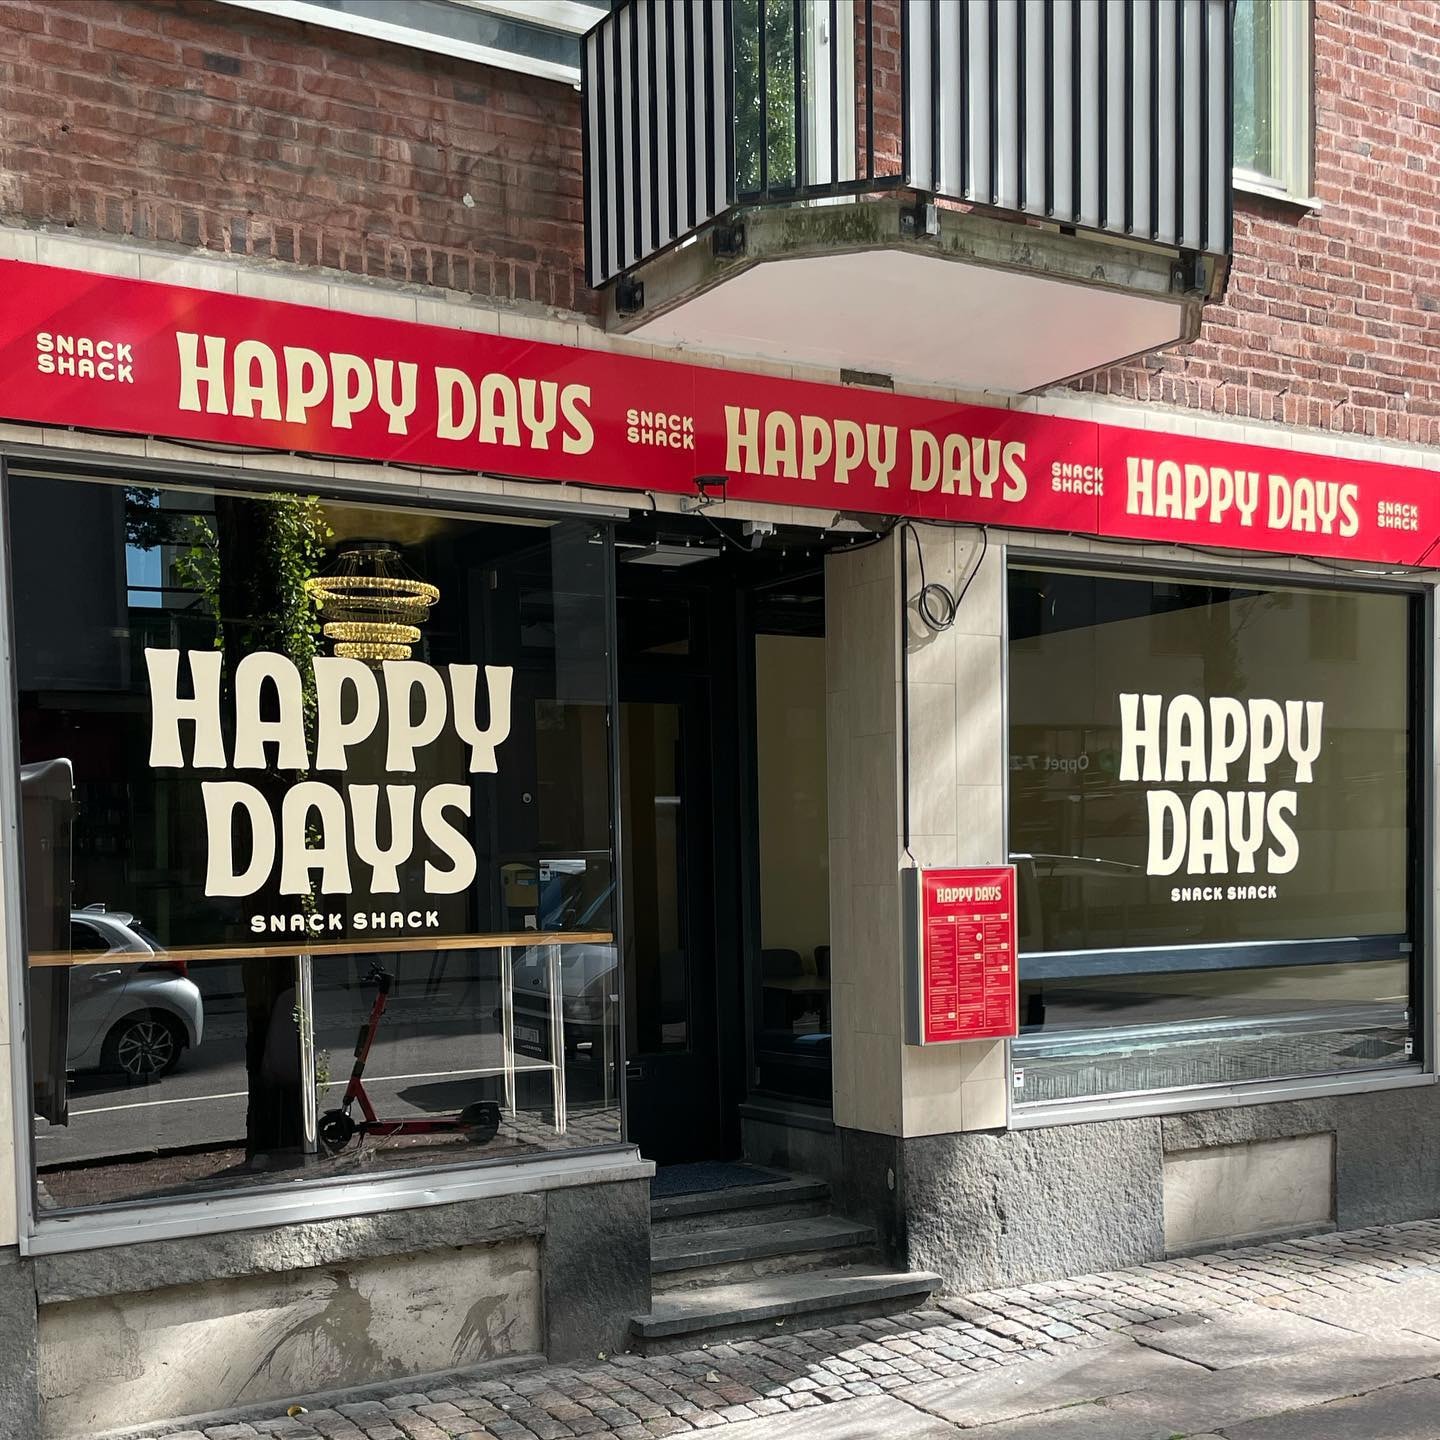 Valfri hamburgare inkl. pommes hos Happy Days i Stampen (5 av 6)